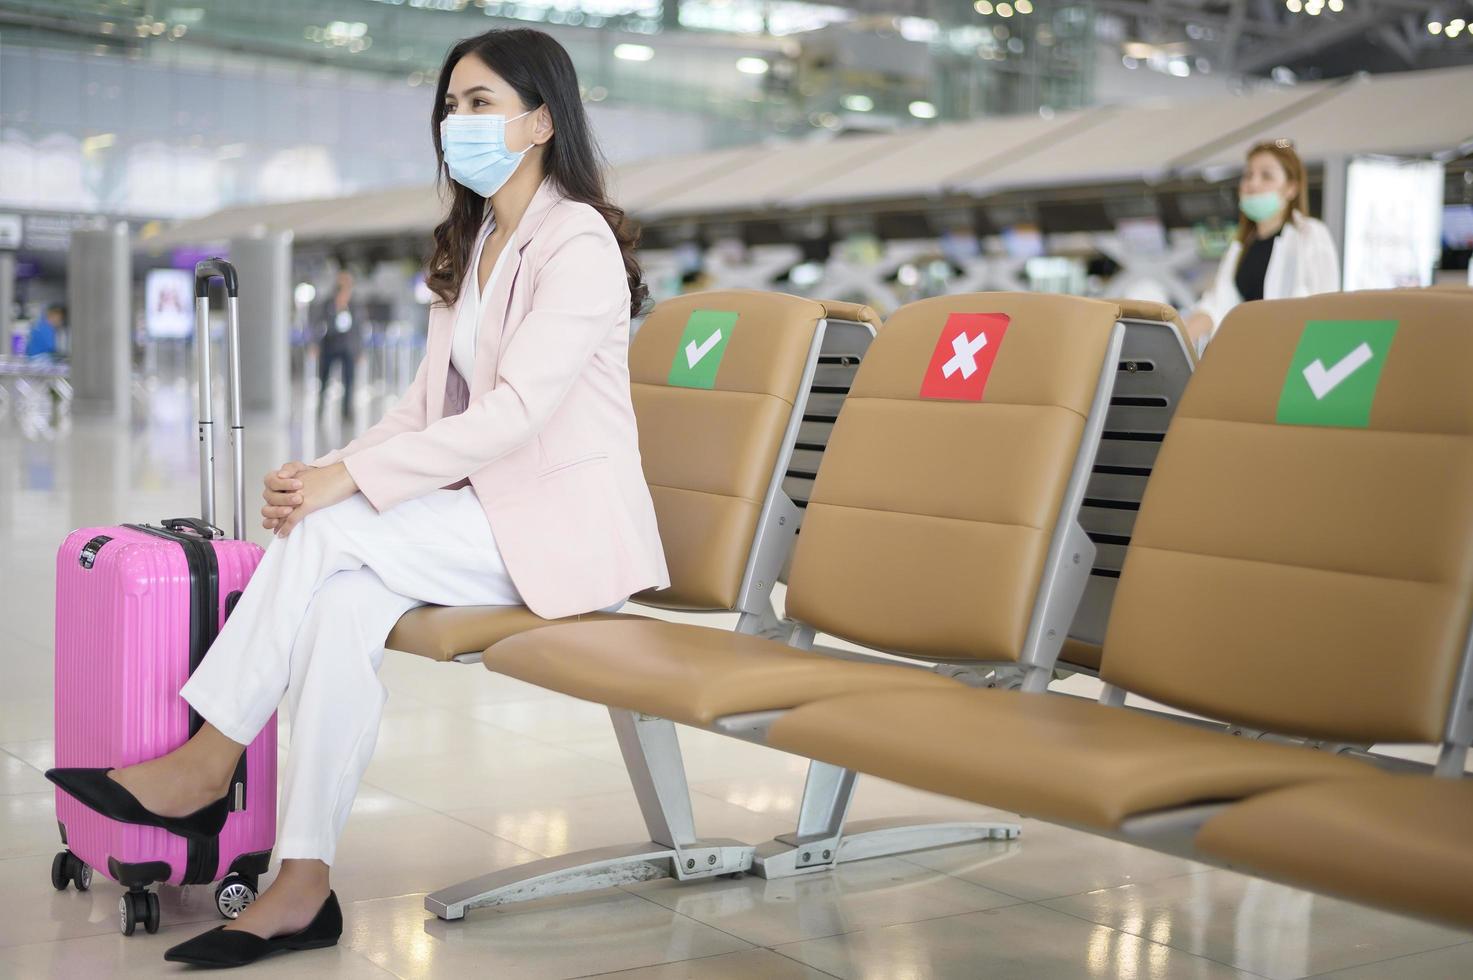 une femme d'affaires porte un masque de protection à l'aéroport international, voyage sous la pandémie de covid-19, voyages de sécurité, protocole de distanciation sociale, nouveau concept de voyage normal photo